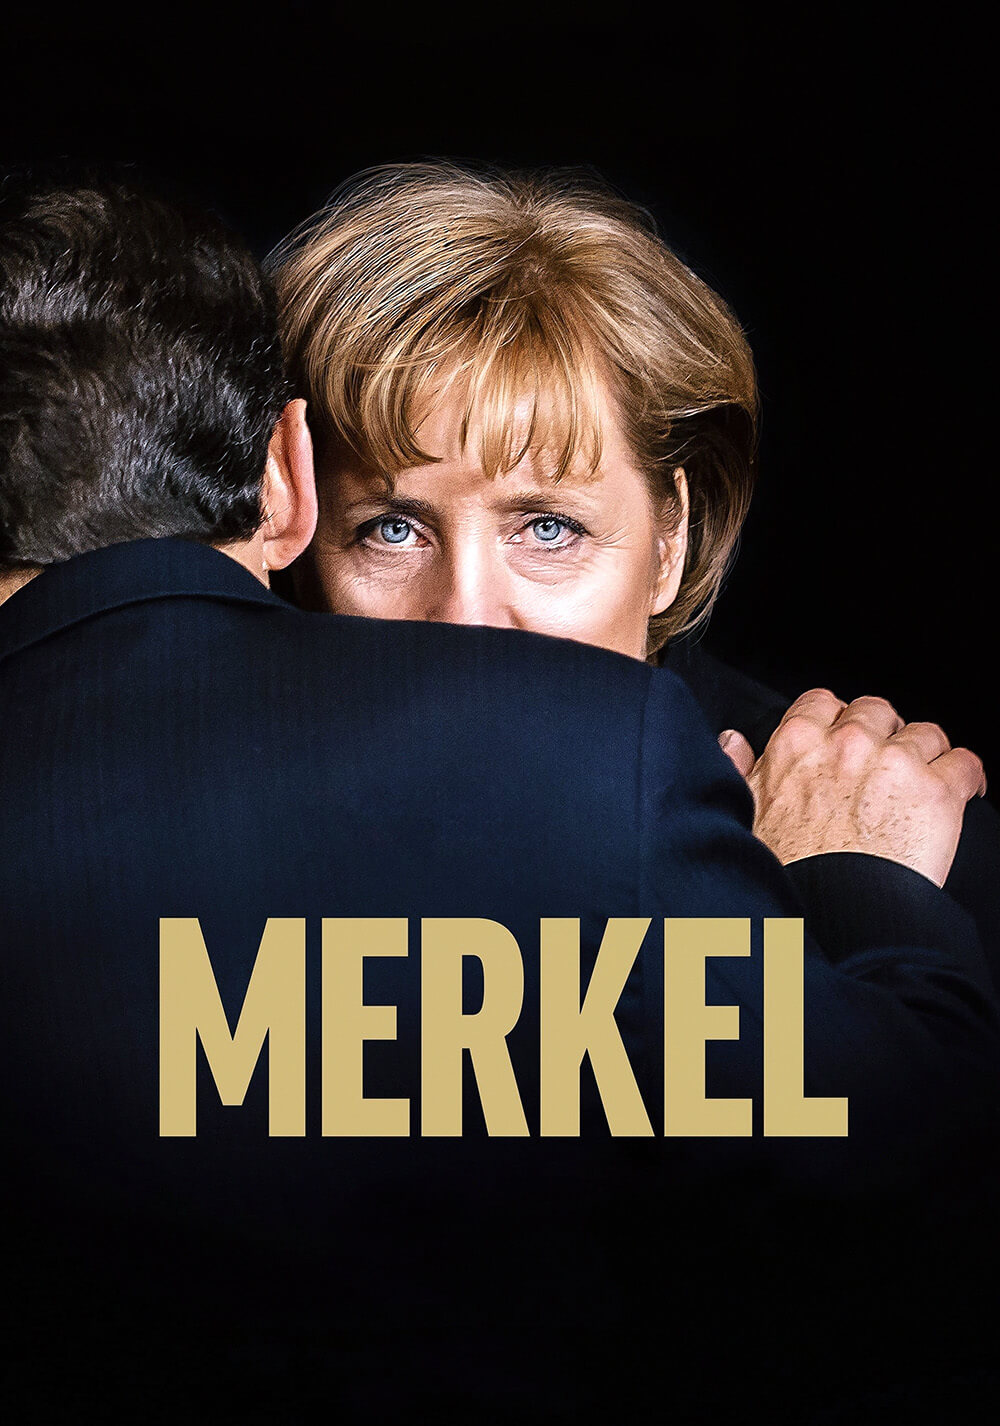 مرکل (Merkel)